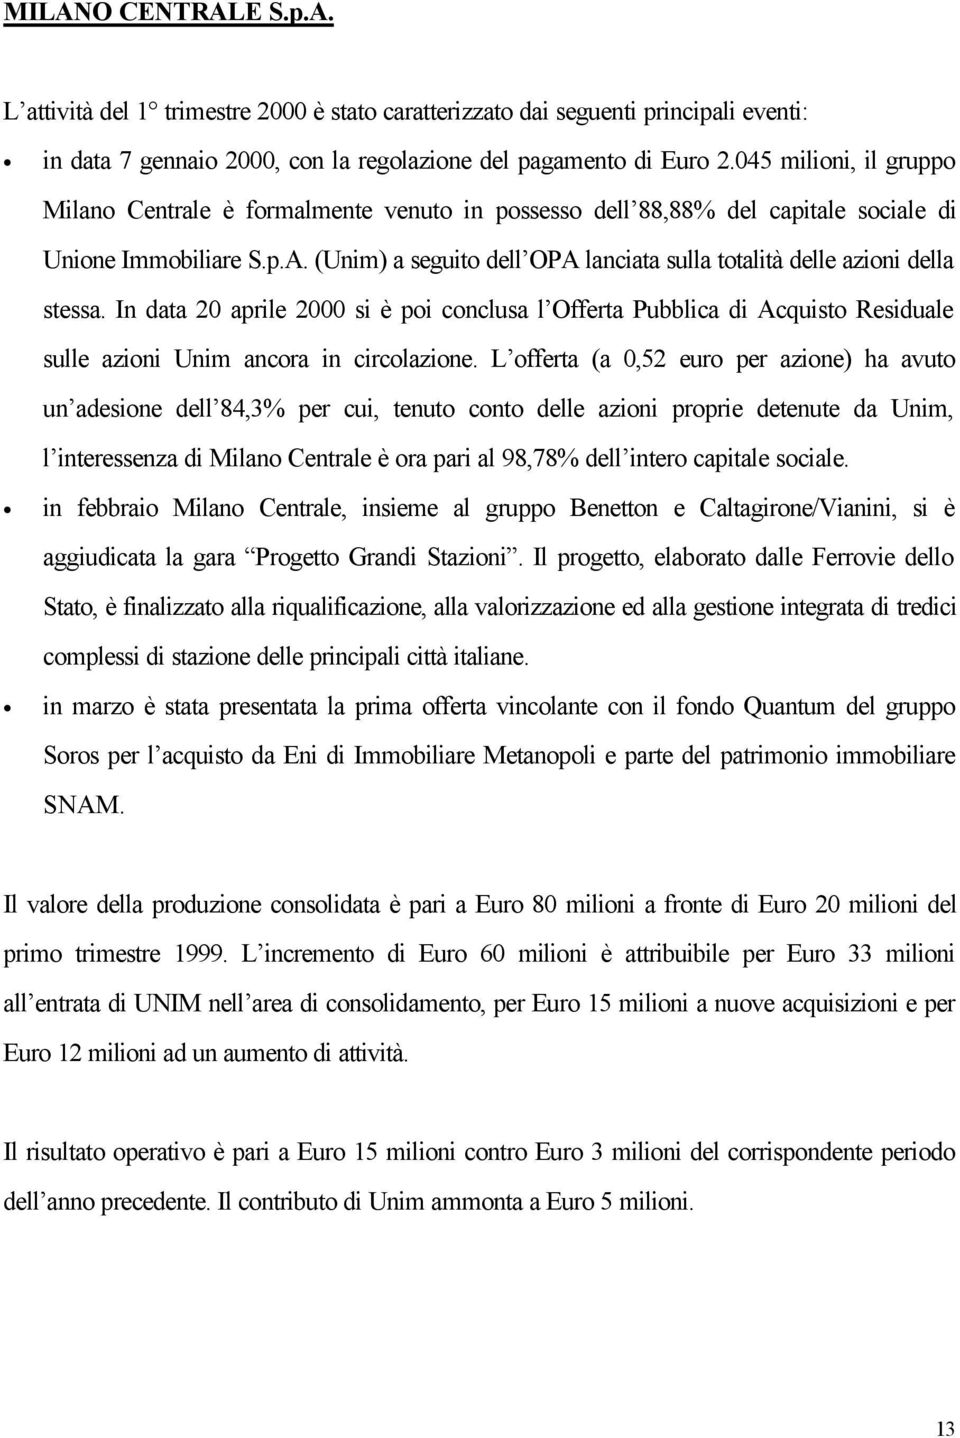 (Unim) a seguito dell OPA lanciata sulla totalità delle azioni della stessa. In data 20 aprile 2000 si è poi conclusa l Offerta Pubblica di Acquisto Residuale sulle azioni Unim ancora in circolazione.